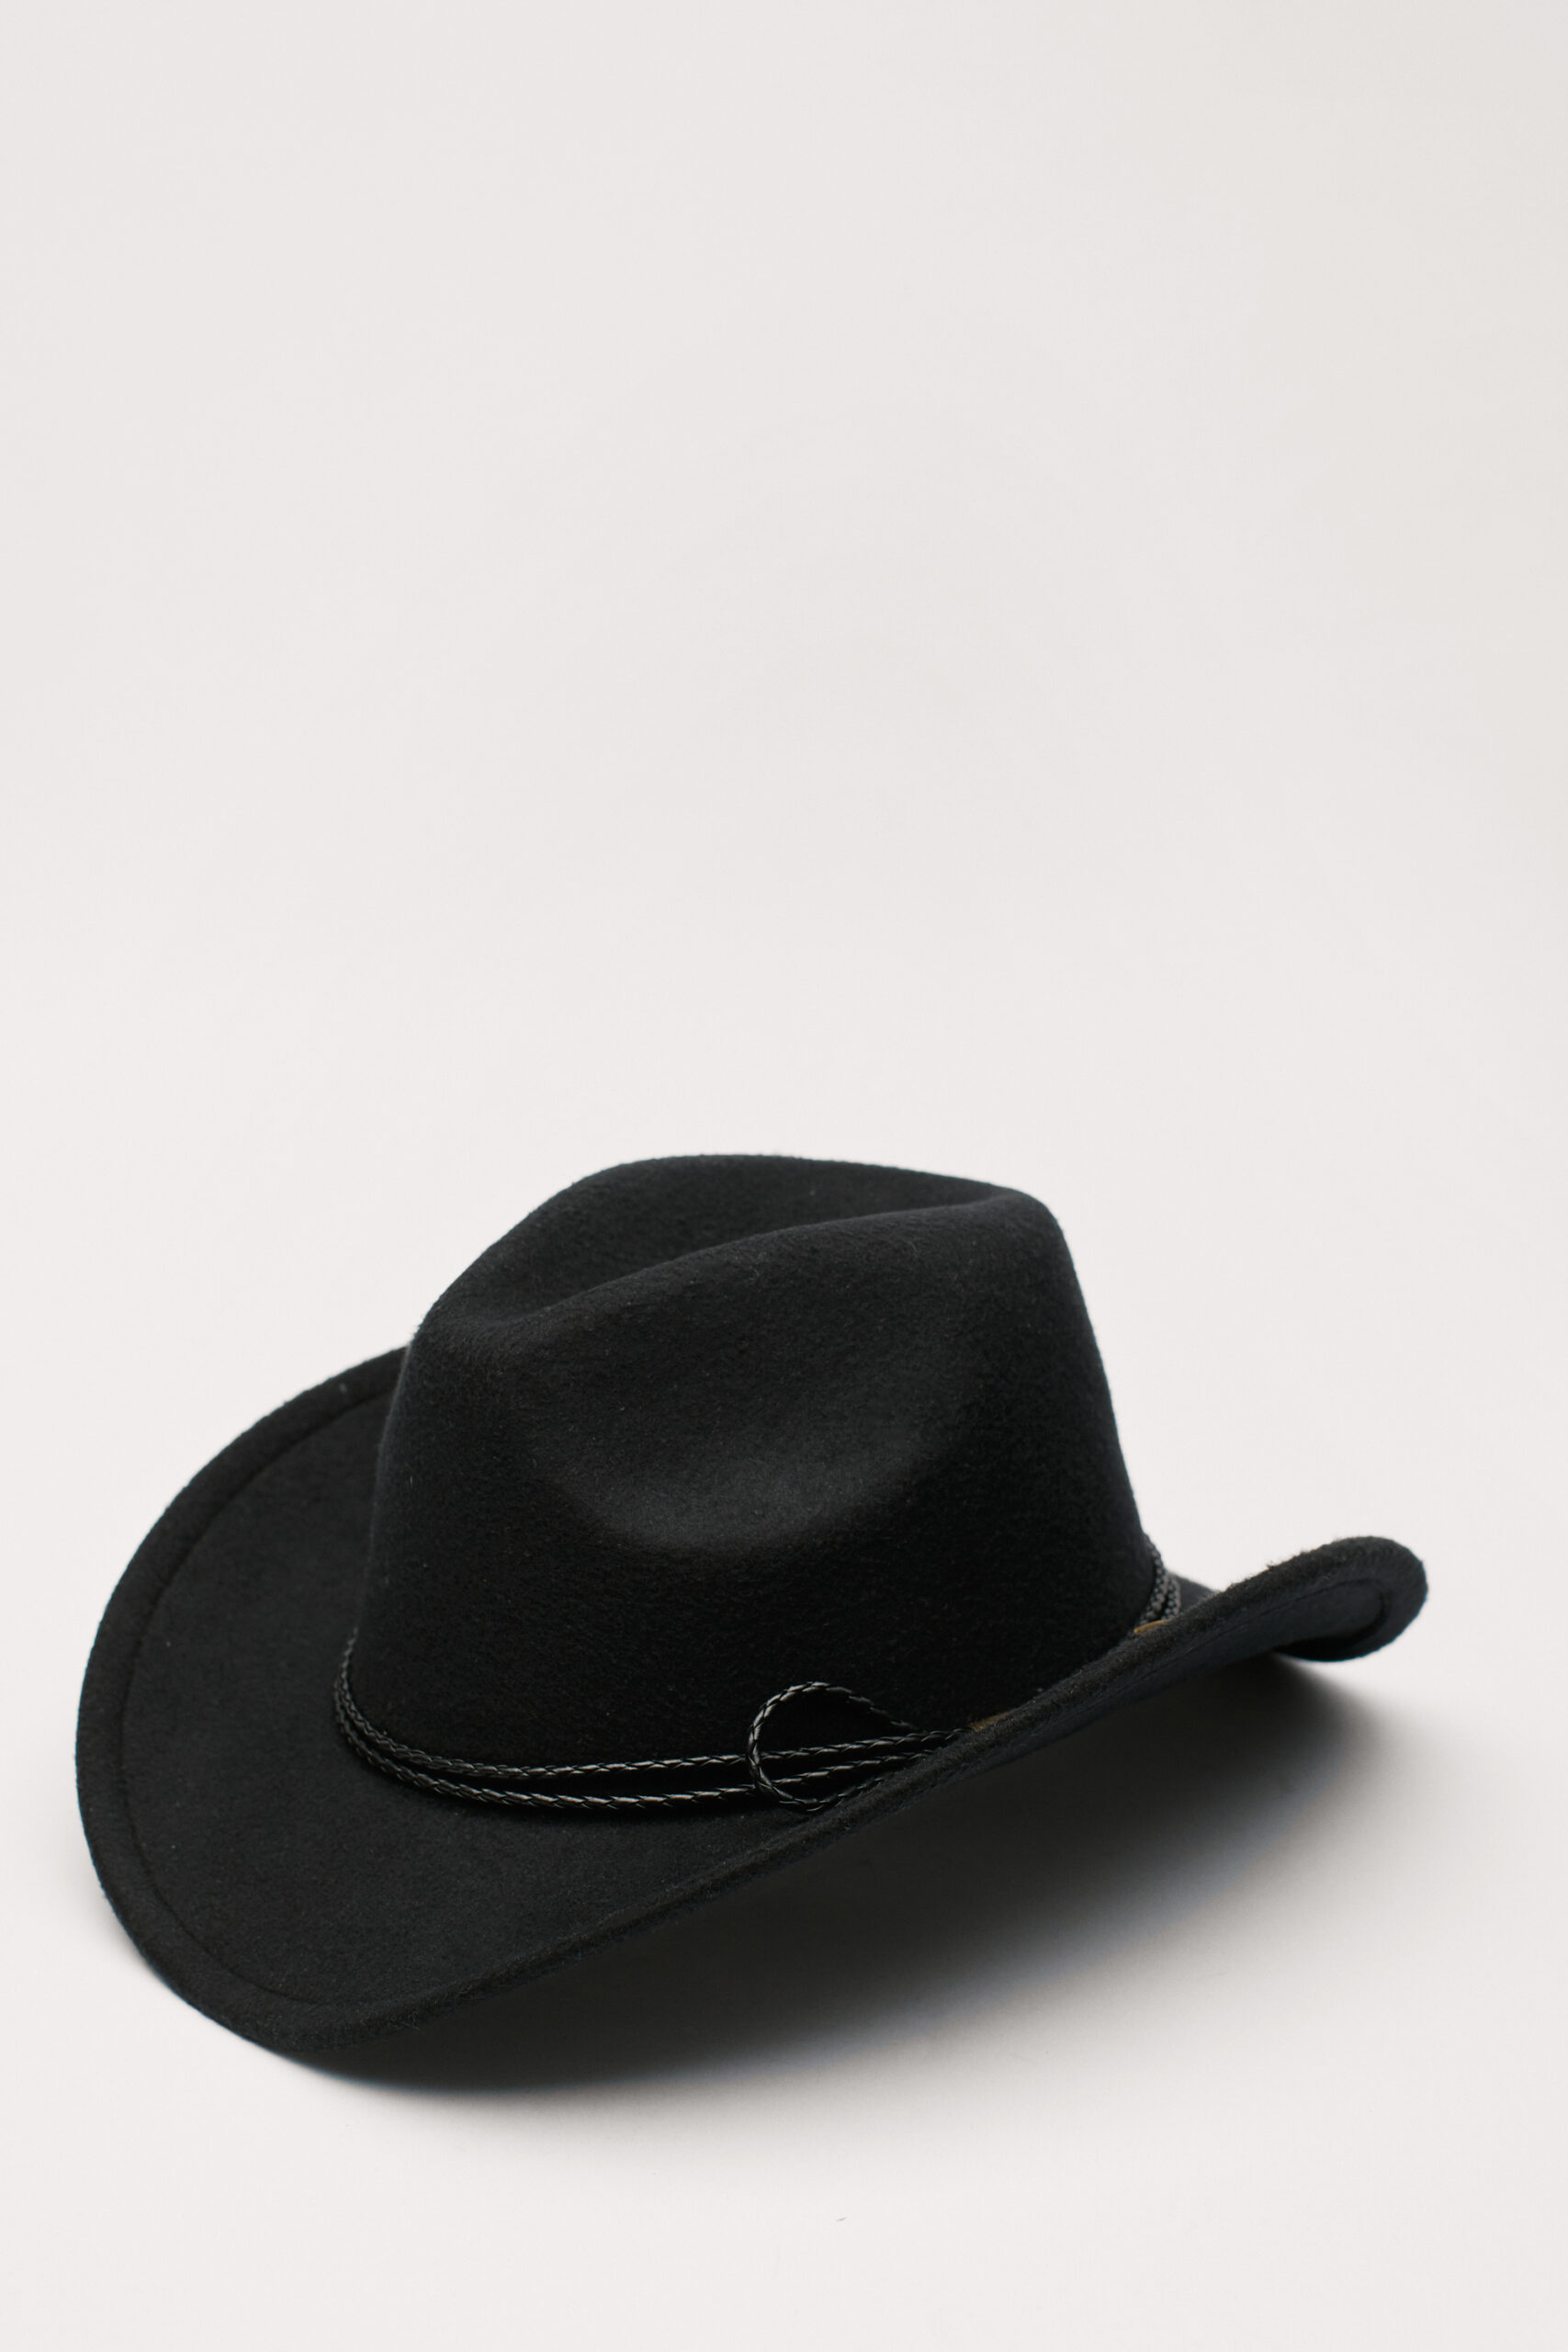 Braid Trim Felt Cowboy Hat